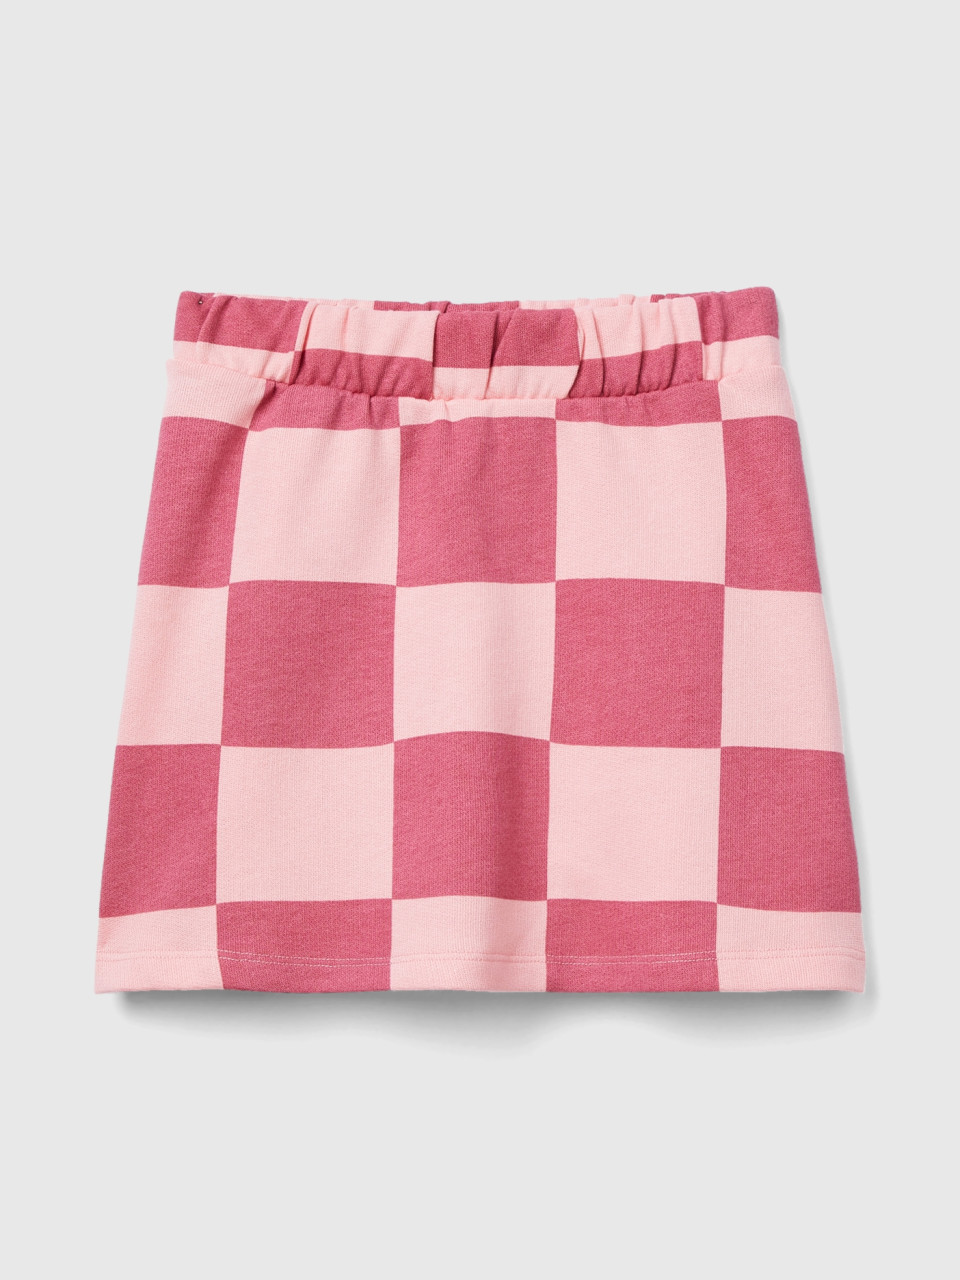 Benetton, Checkered Mini Skirt, Multi-color, Kids